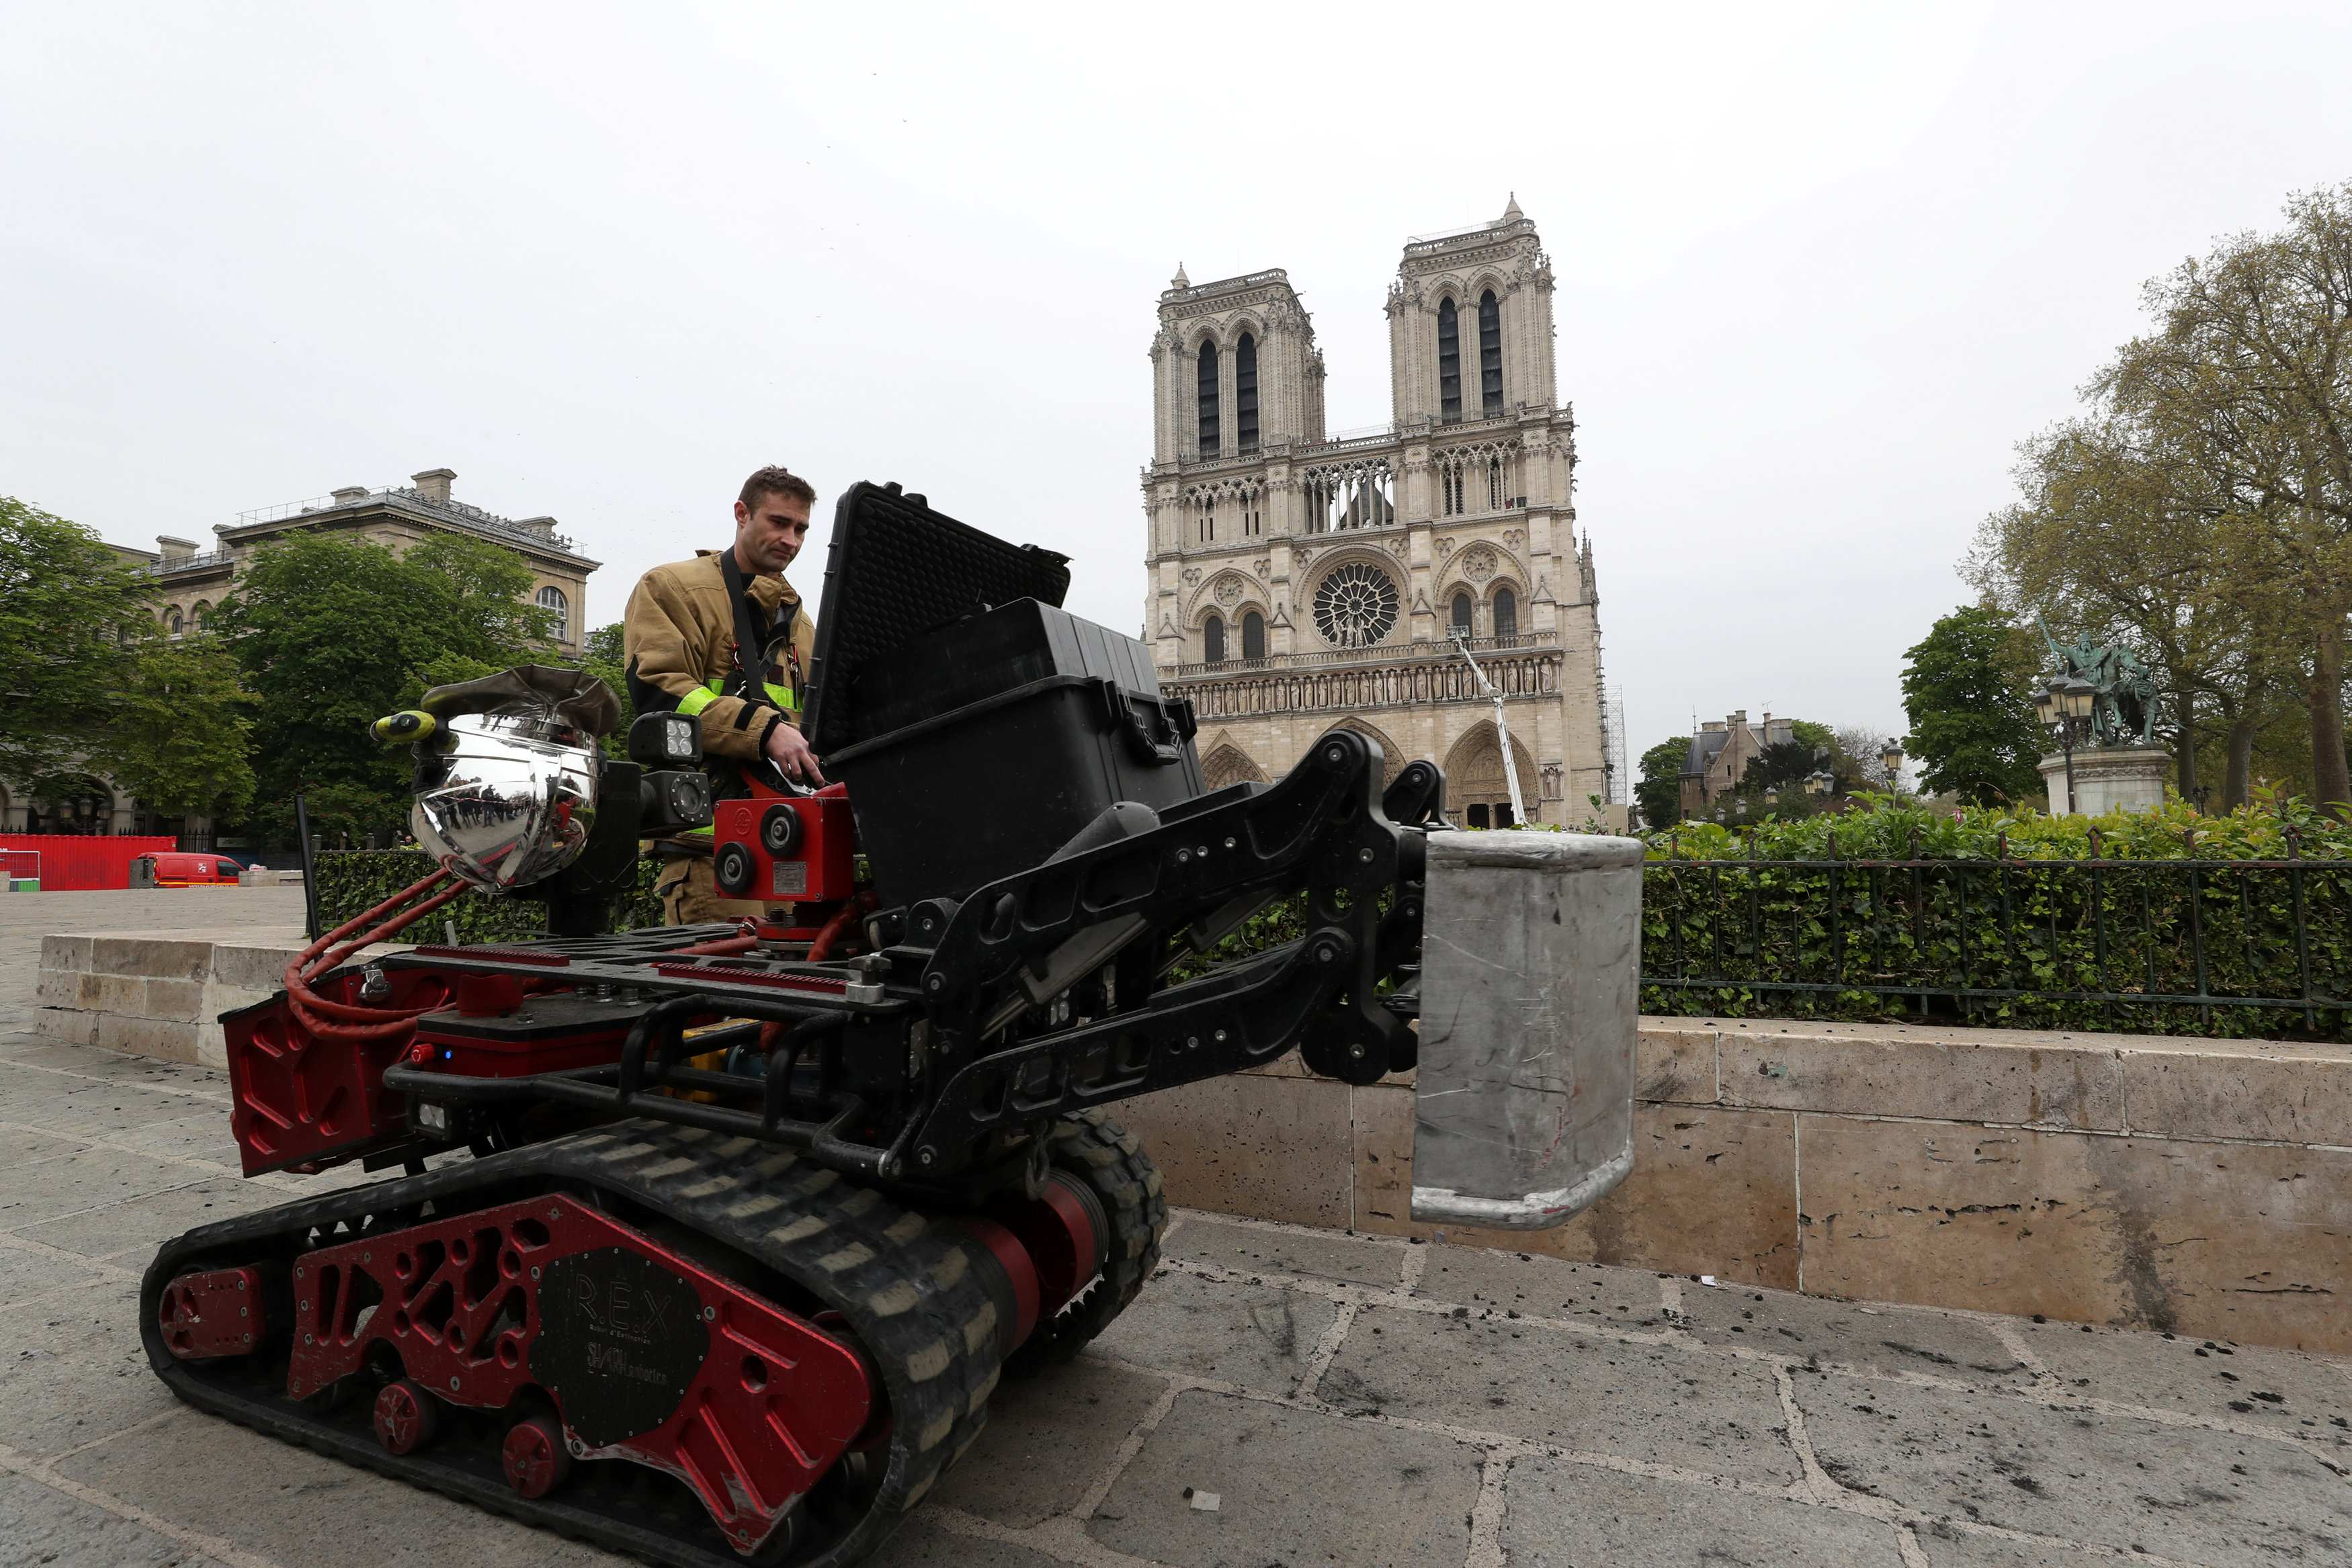 Gobierno señala vulnerabilidades en la estructura de Notre Dame pero la estructura resiste